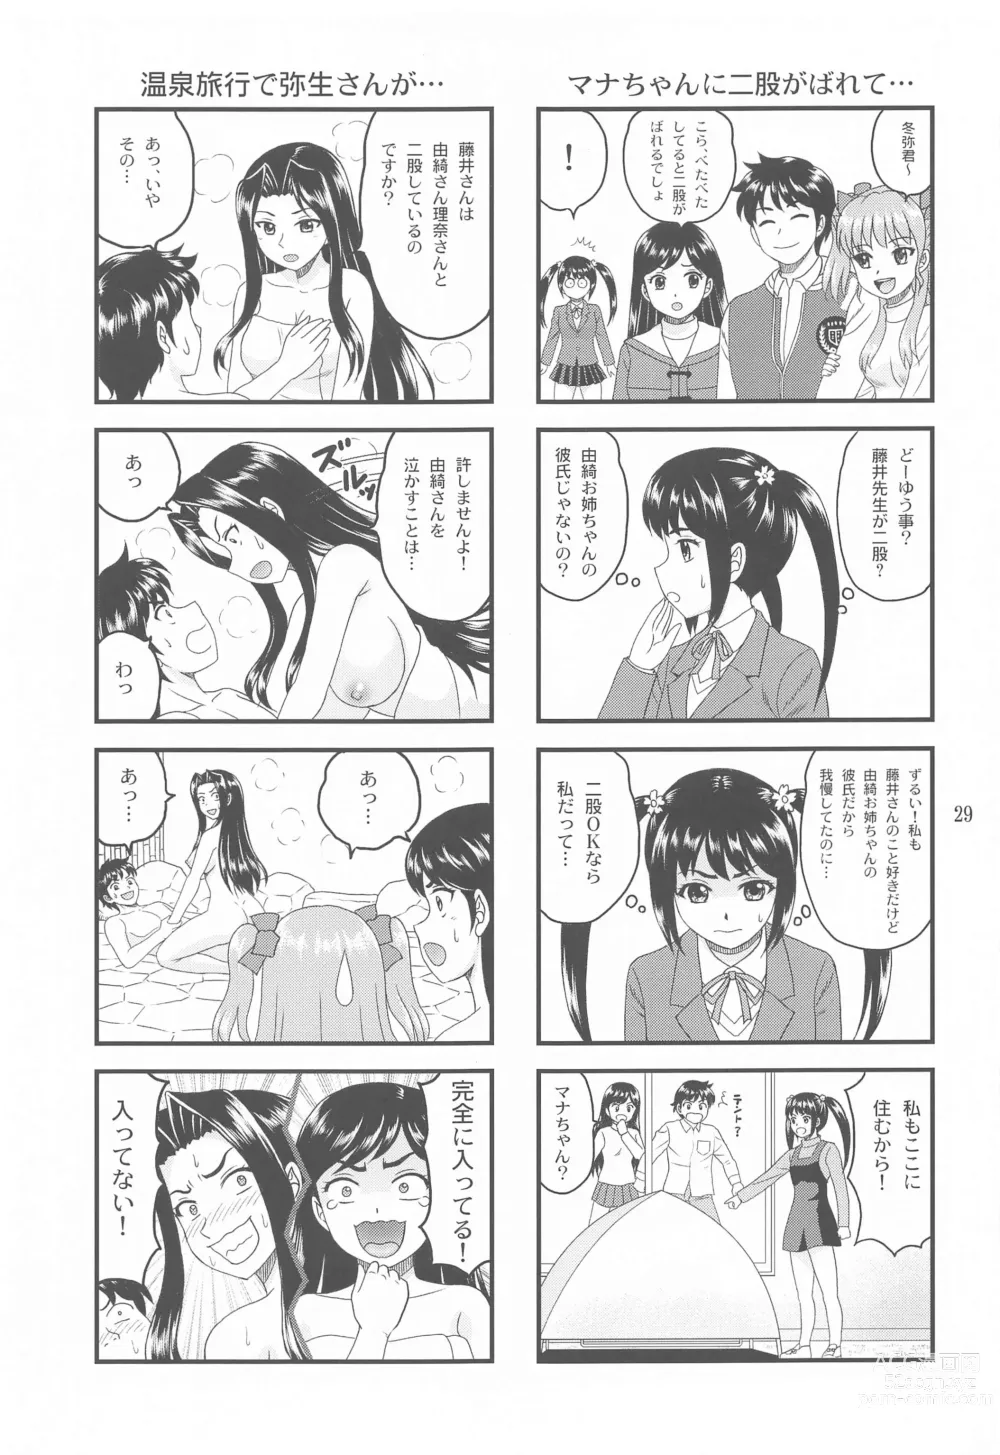 Page 28 of doujinshi Yuki mo Rina mo Kanojo